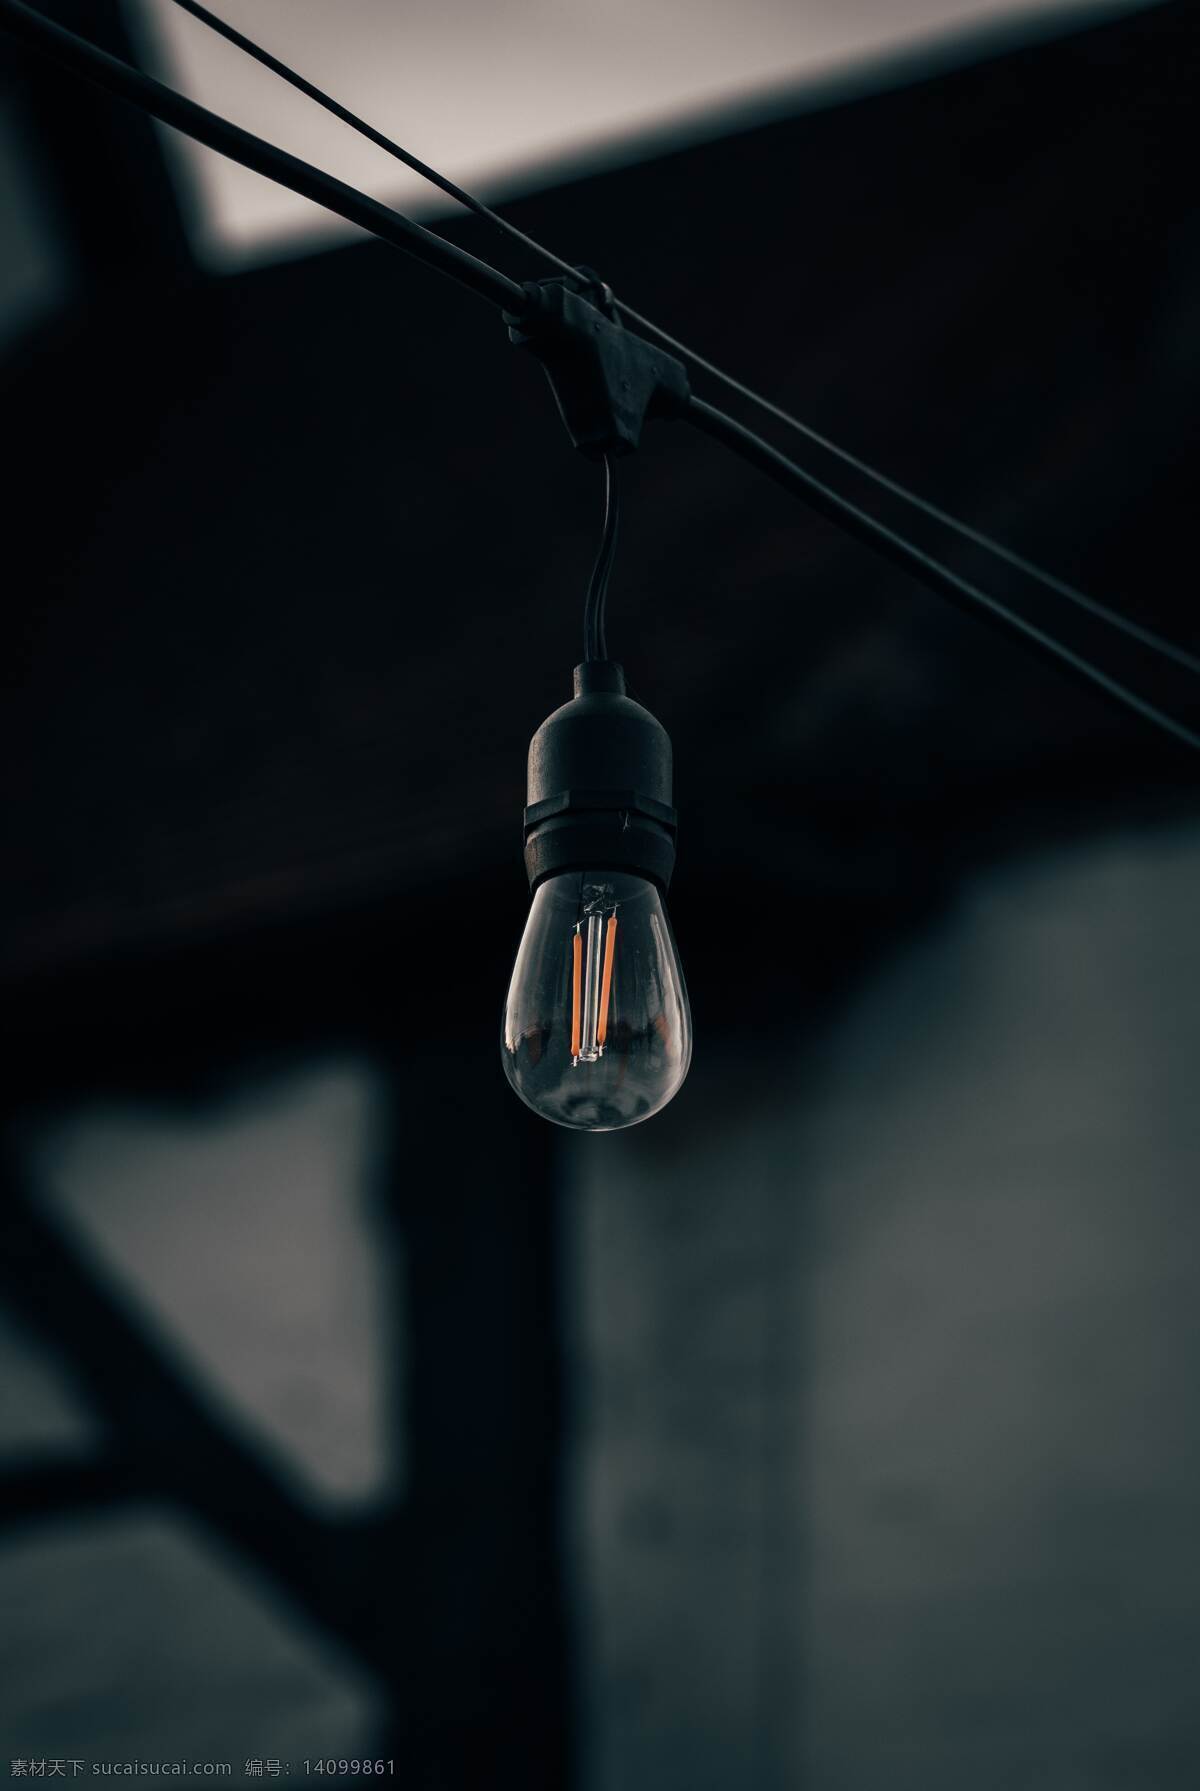 室外灯泡 灯泡 室内灯泡 发光 灯具 透明 玻璃 生活百科 生活素材